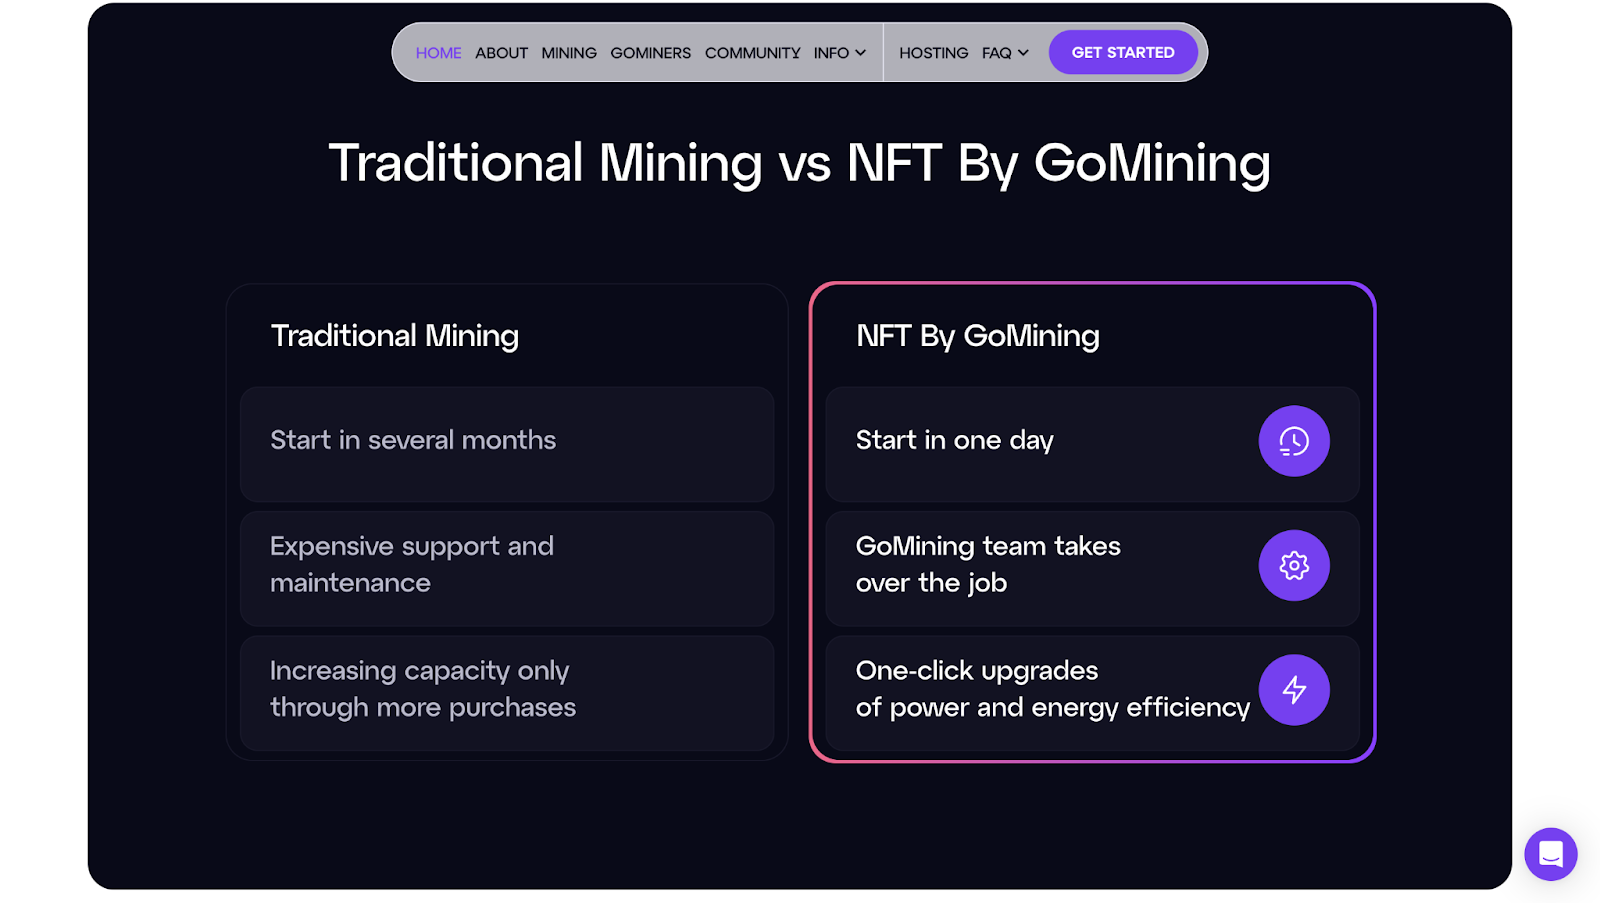 Vergelijking tussen mijnbouw met GoMining NFT's en traditionele mijnbouw, volgens de projectwebsite